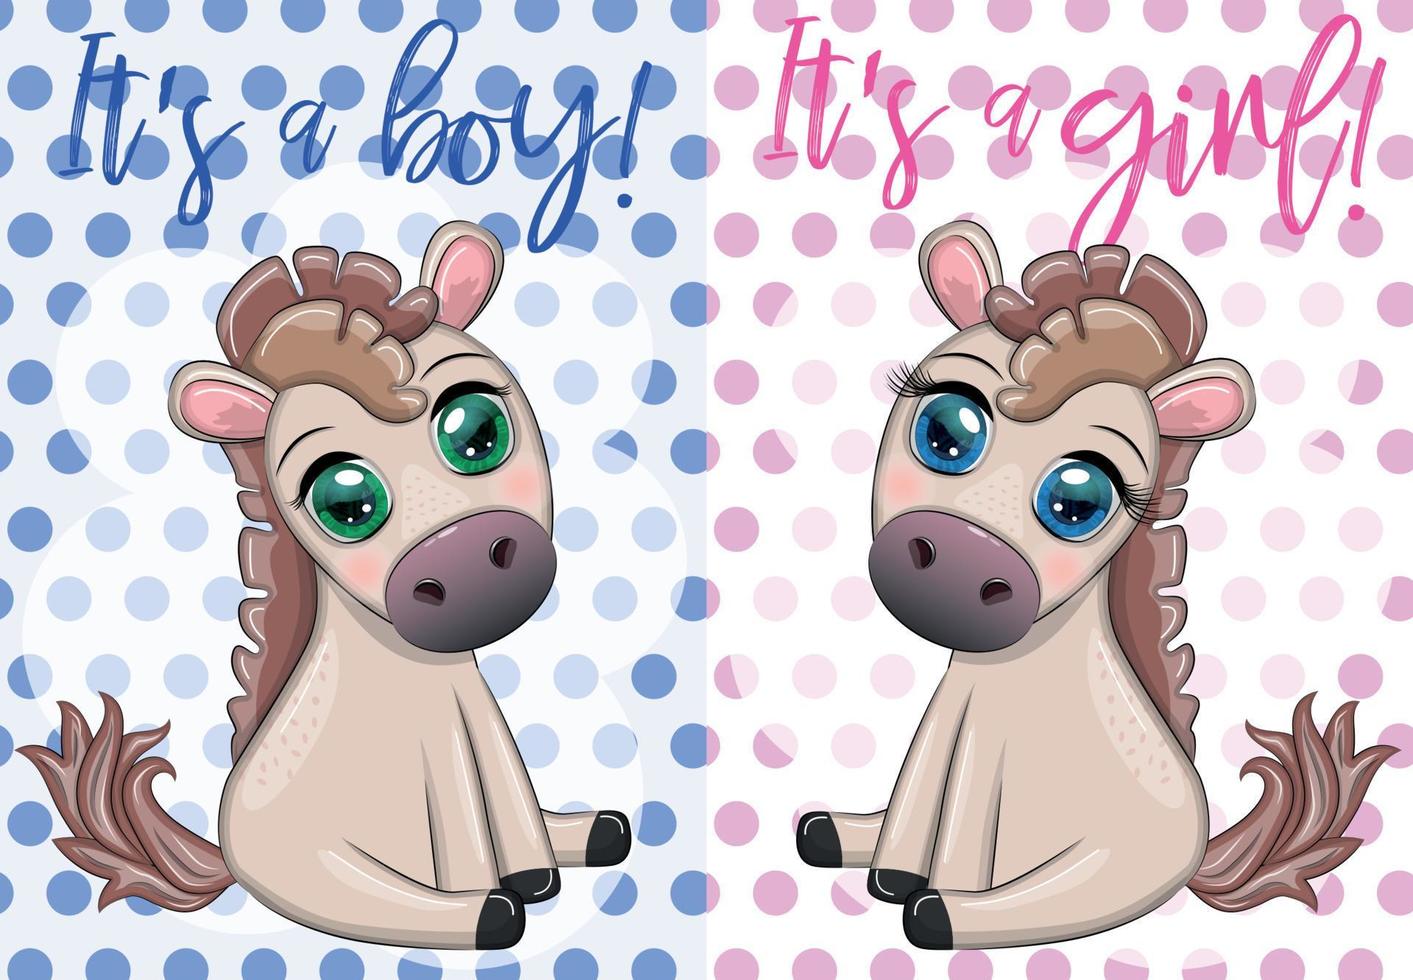 bebis dusch fest med söt tecknad serie häst, ponny pojke och flicka vektor